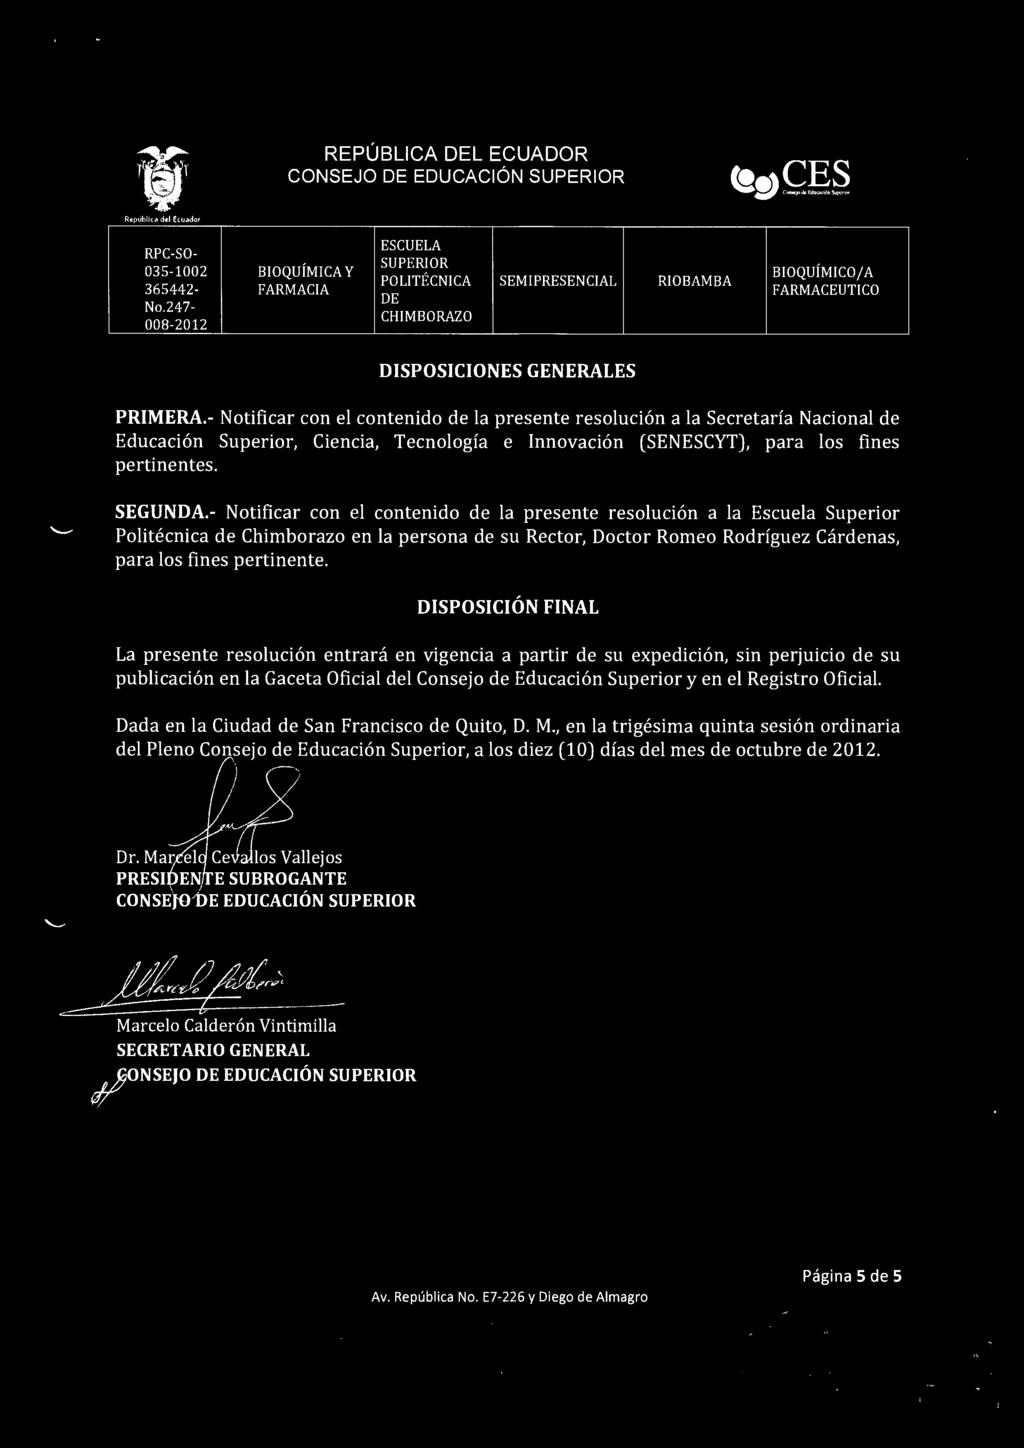 - Notificar con el contenido de la presente resoluci6n a la Escuela Superior Politecnica de Chimborazo en la persona de su Rector, Doctor Romeo Rodriguez Cardenas, para los fines pertinente.